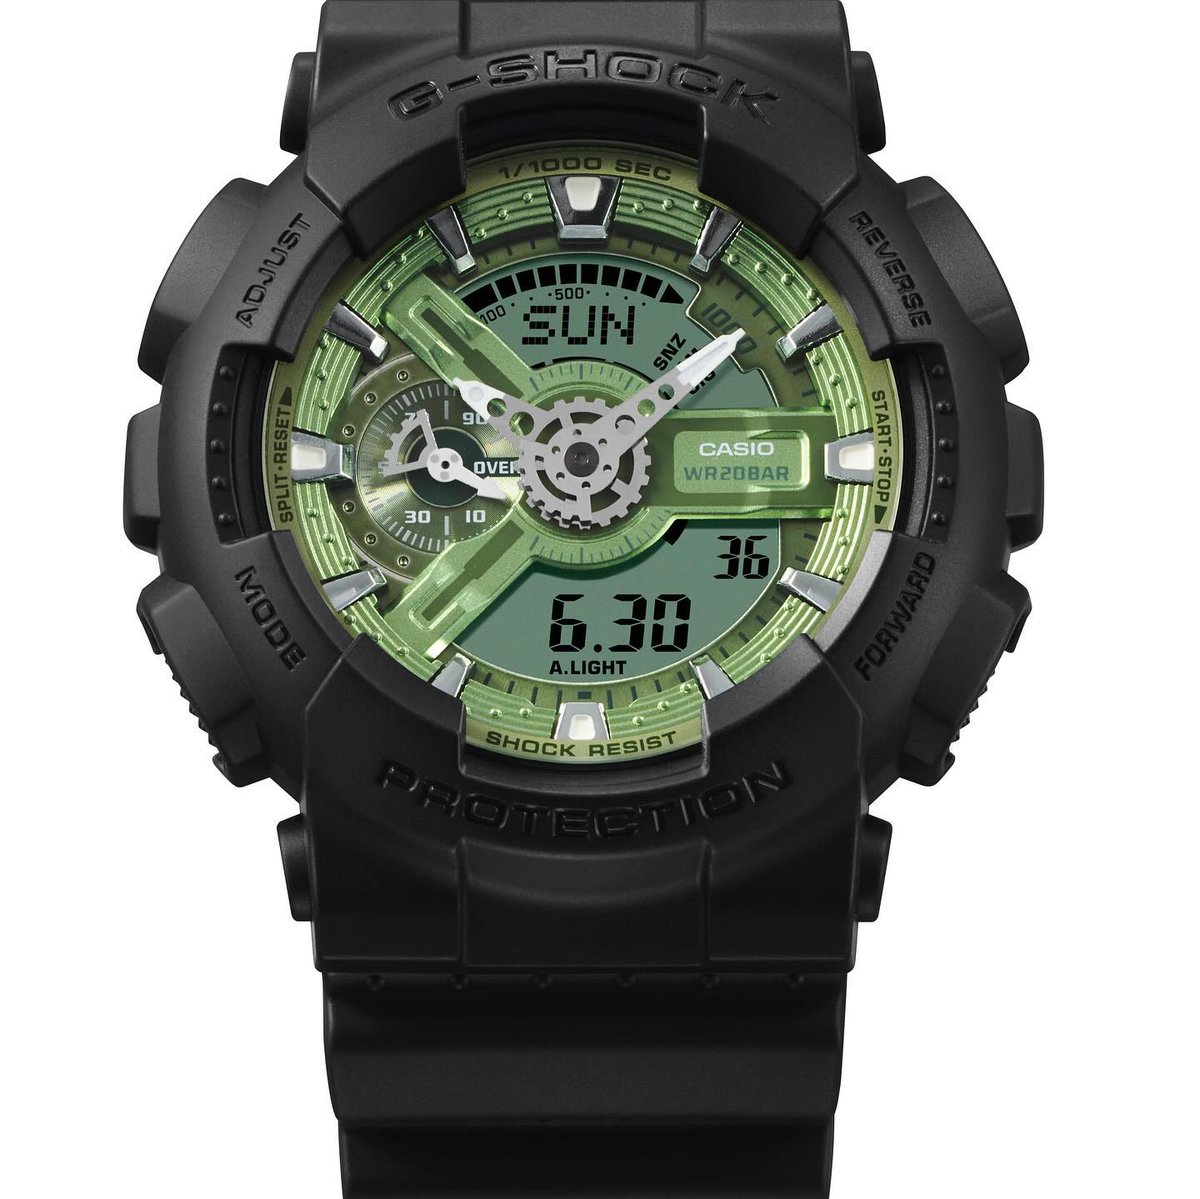 Découvrez dès maintenant la nouvelle GA-110CD aux teintes vertes ou bleues, disponible sur notre site casio.com/fr/watches/gsh… et au G-SHOCK store Paris 🔥 Plutôt 🟢 ou 🔵 ?